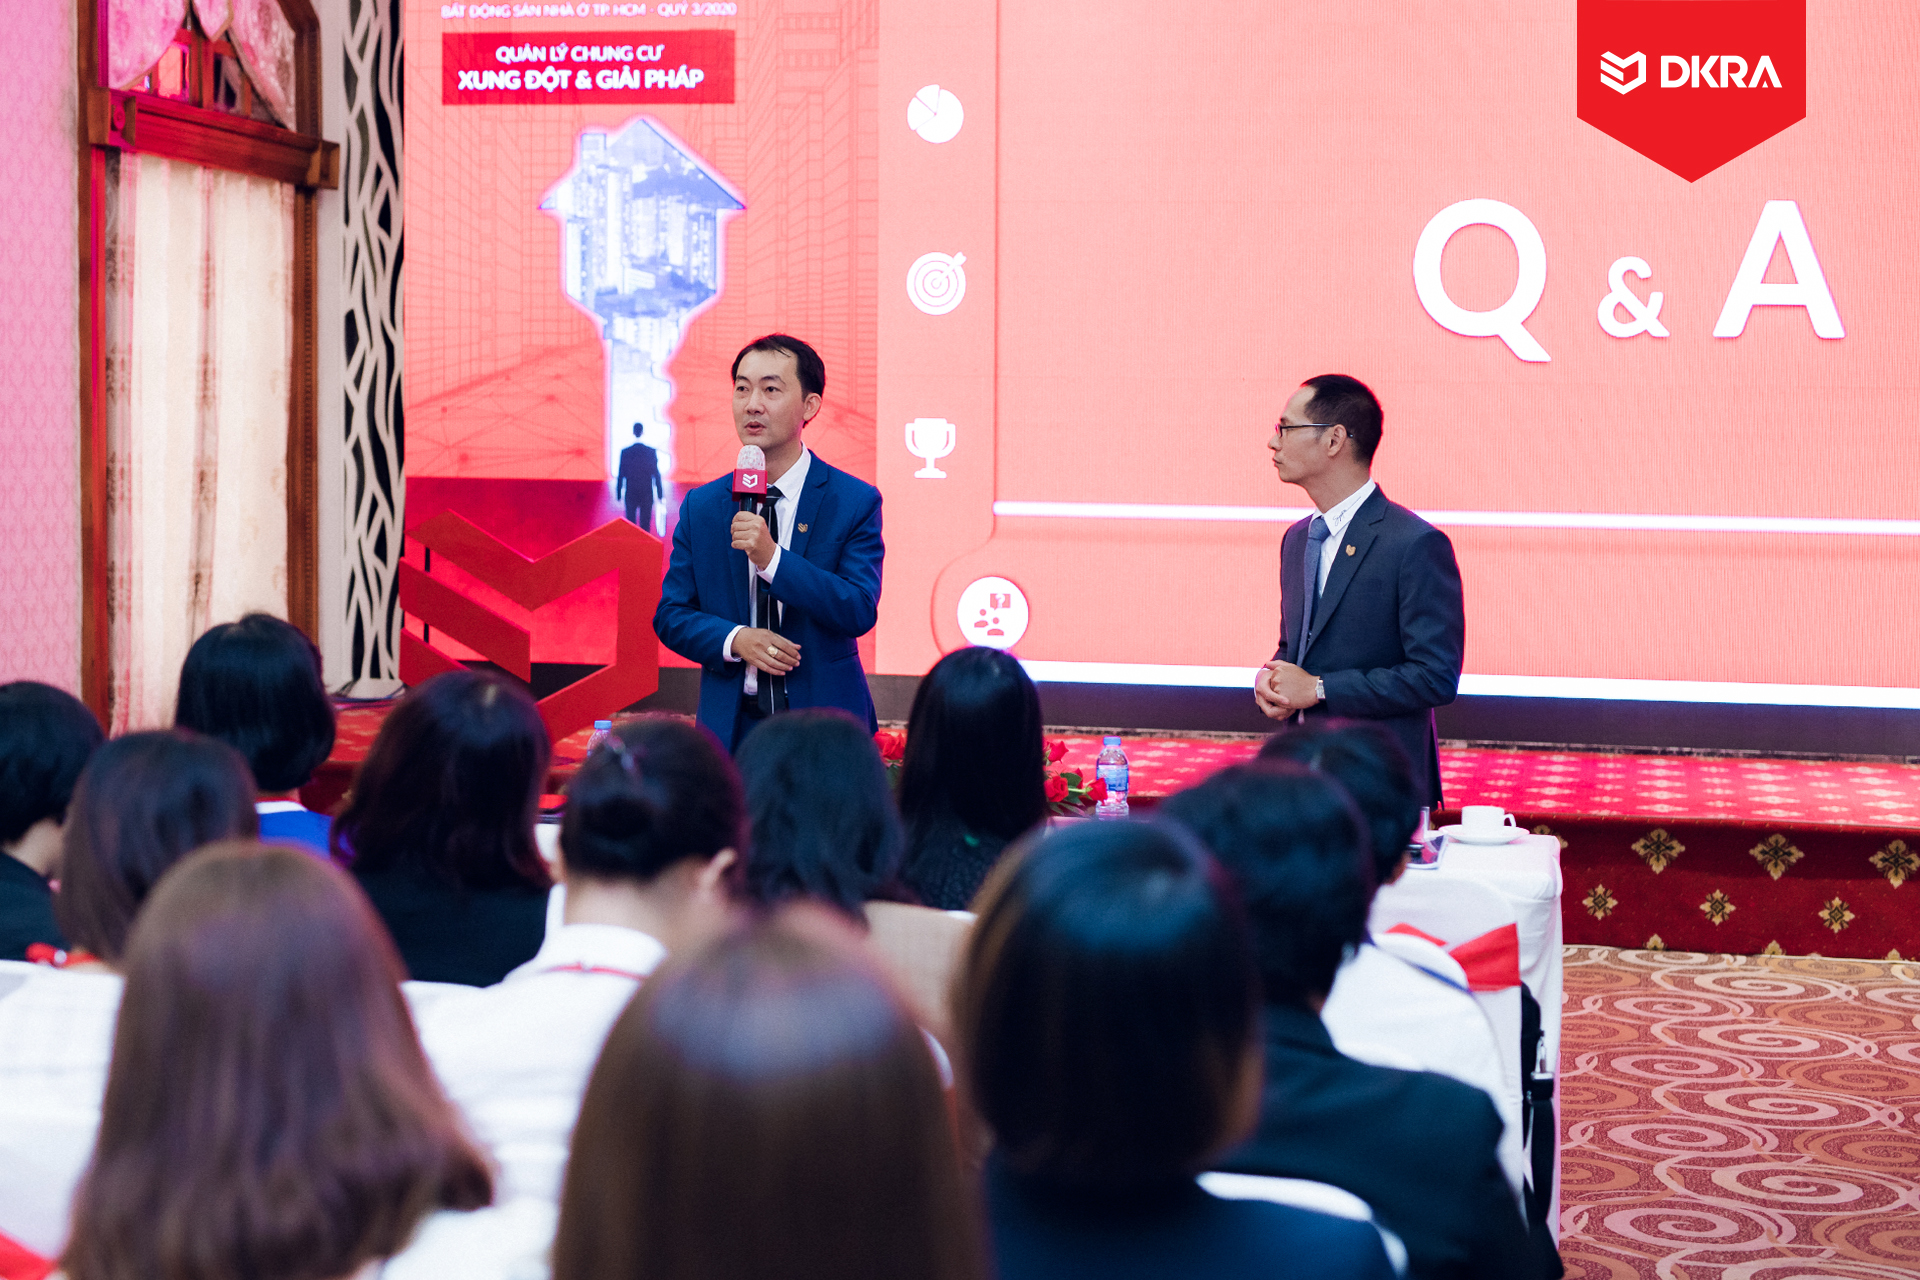 Ông Vũ Tiến Thành - CEO DKRA Property Management, thành viên DKRA Vietnam giải đáp các thắc mắc của khách tham dự trong phần Q&A.